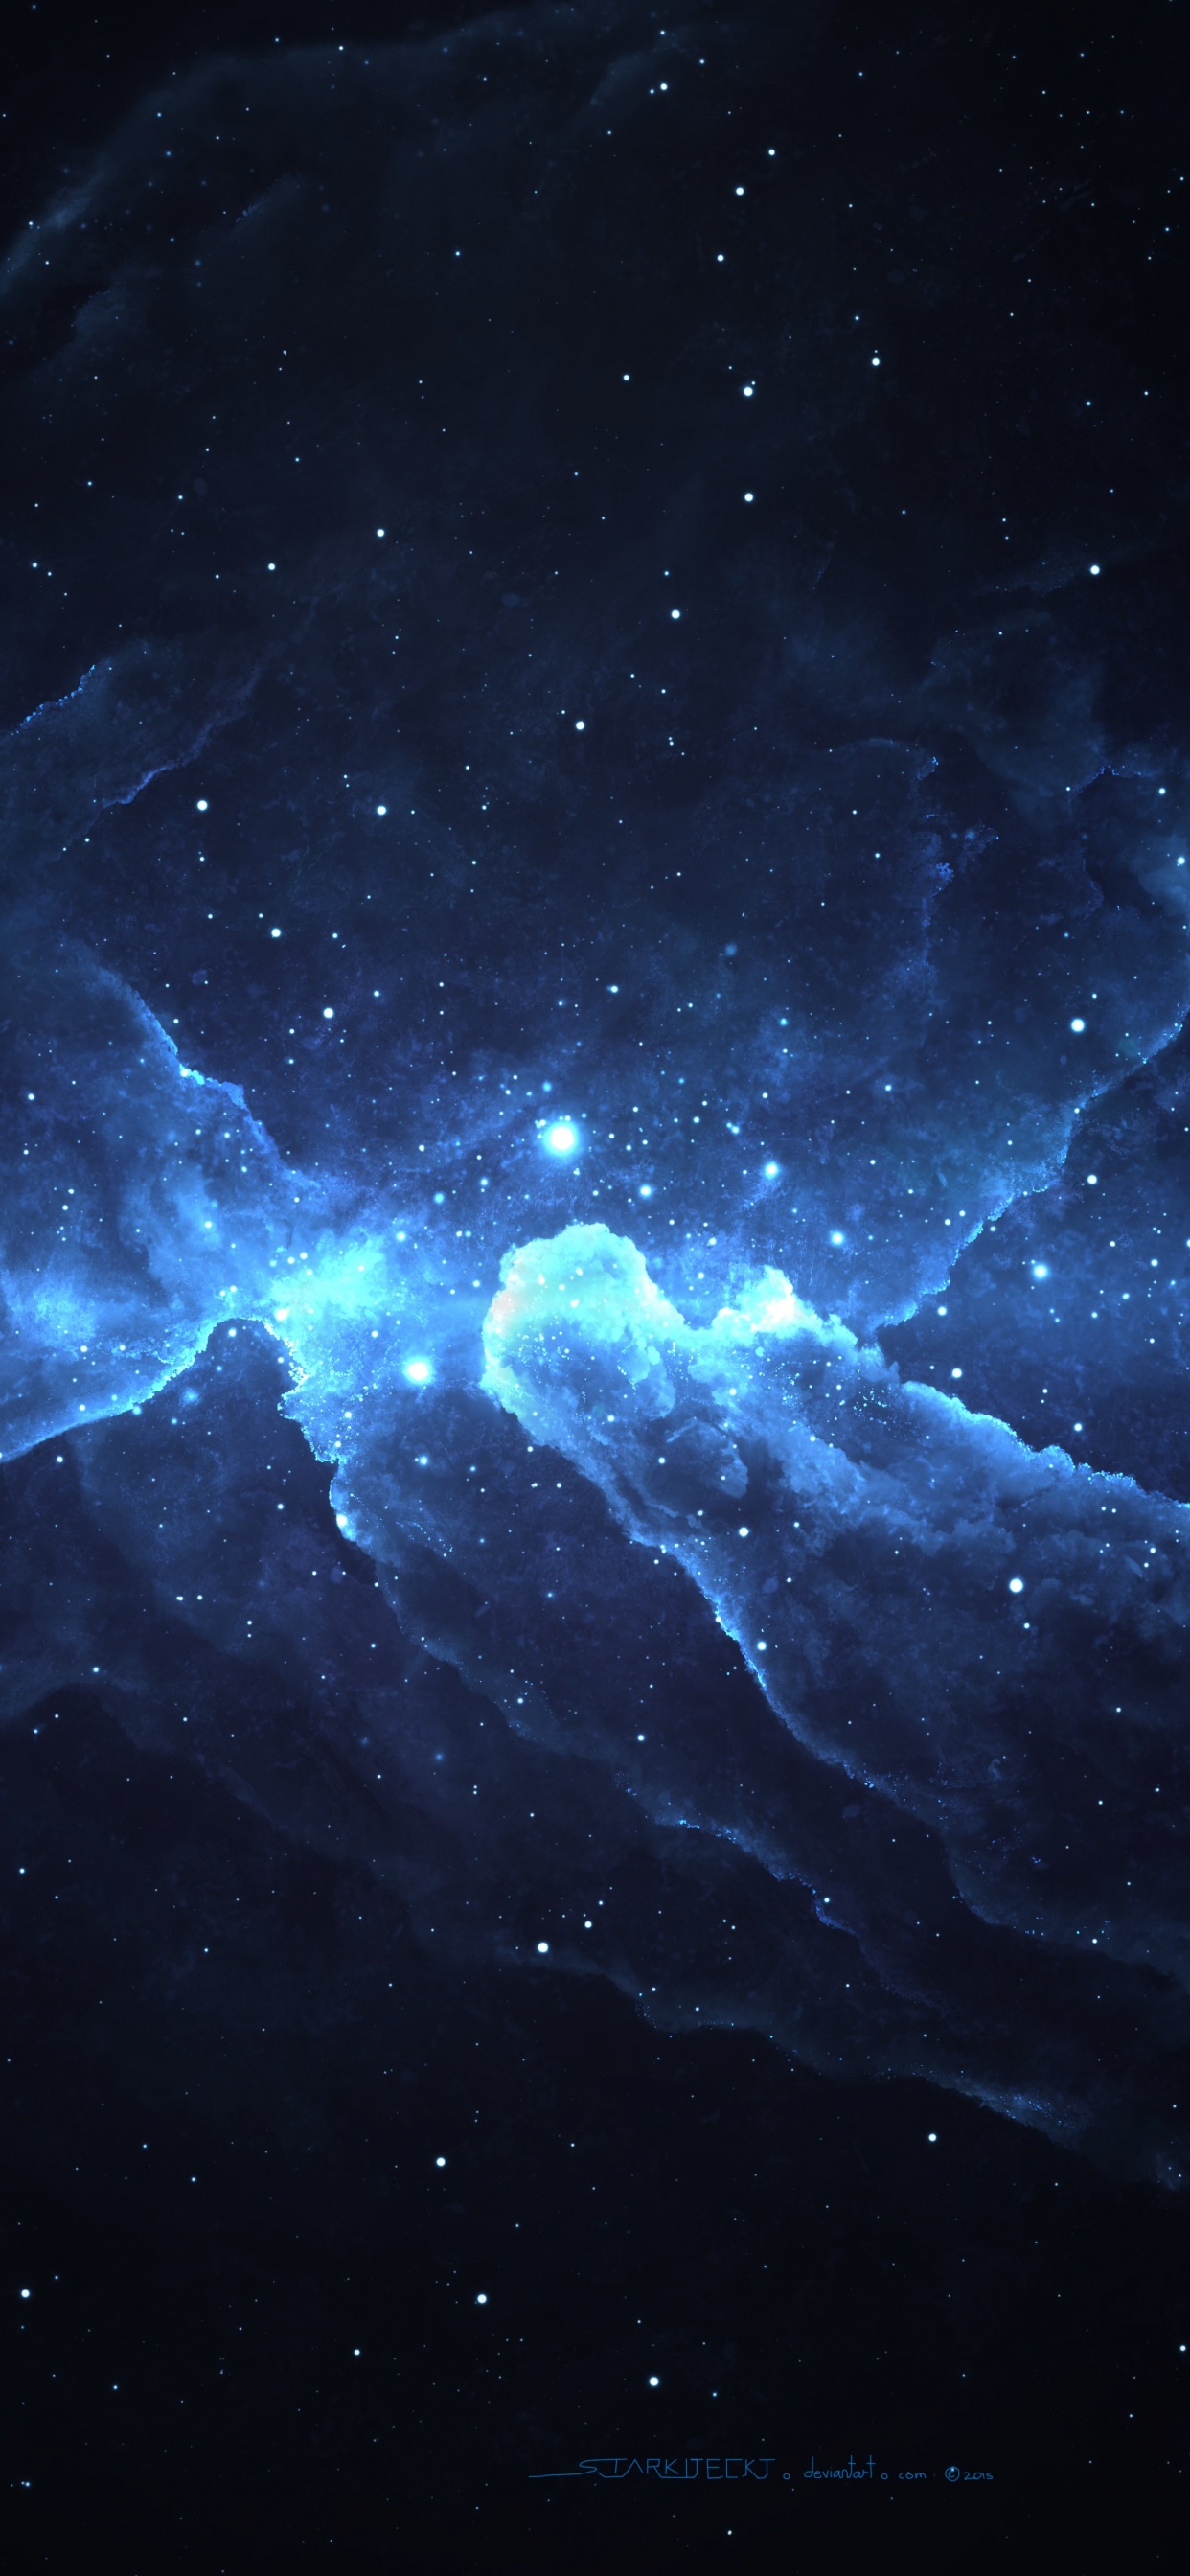 Abbildung Der Weißen Und Blauen Galaxie. Wallpaper in 1242x2688 Resolution